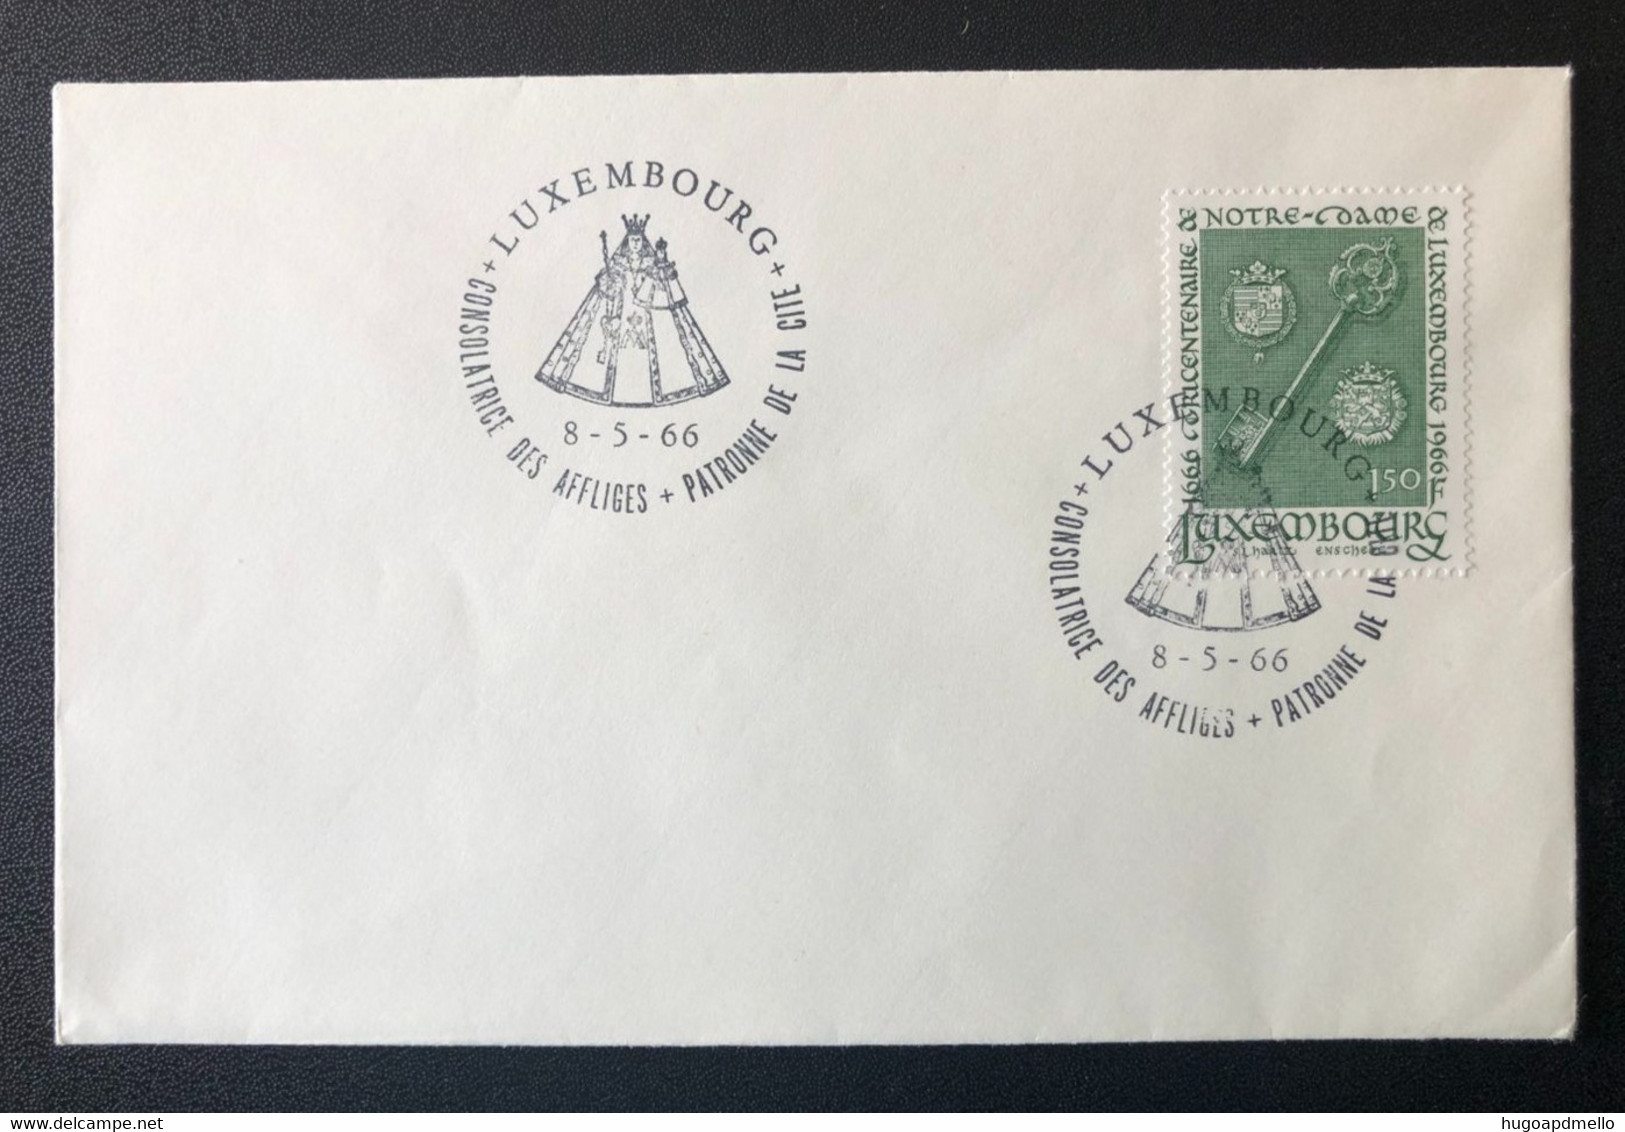 LUXEMBOURG, Uncirculated Cover, « Consolatrice Des Affligés Patronne De La Cité », « Commemorative Postmark », 1966 - Briefe U. Dokumente